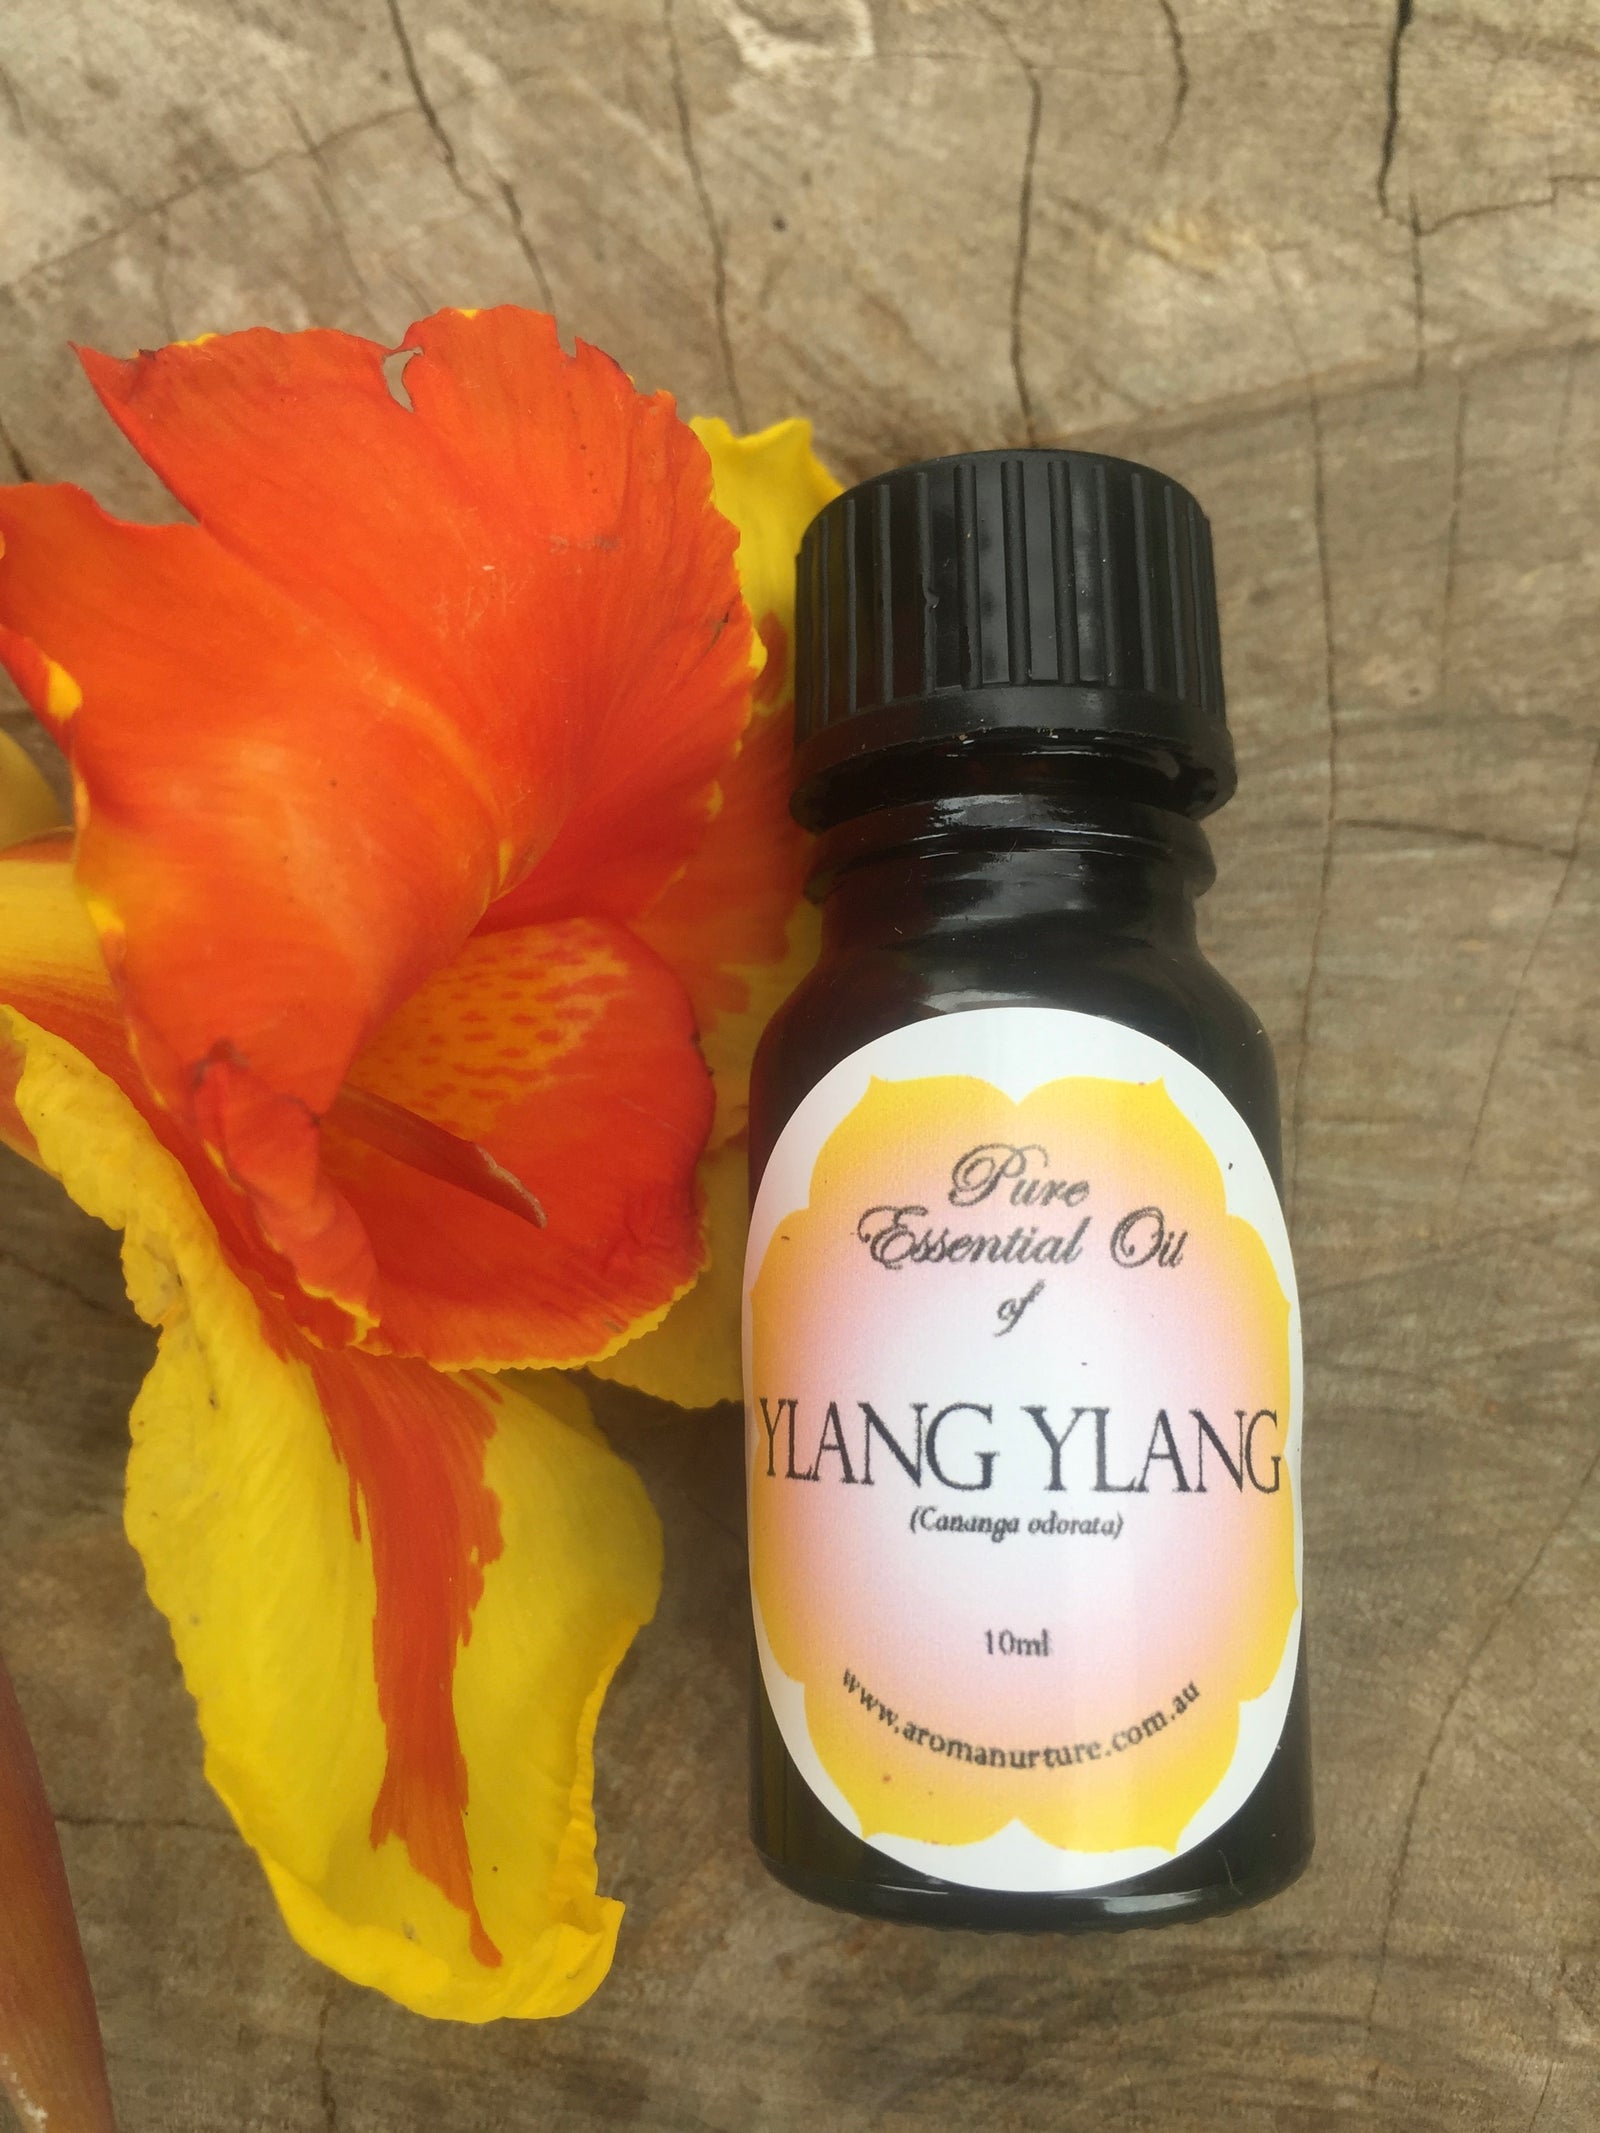 Pure Essential Oil of Ylang ylang 1st grade 10mls. (Cananga odorata).